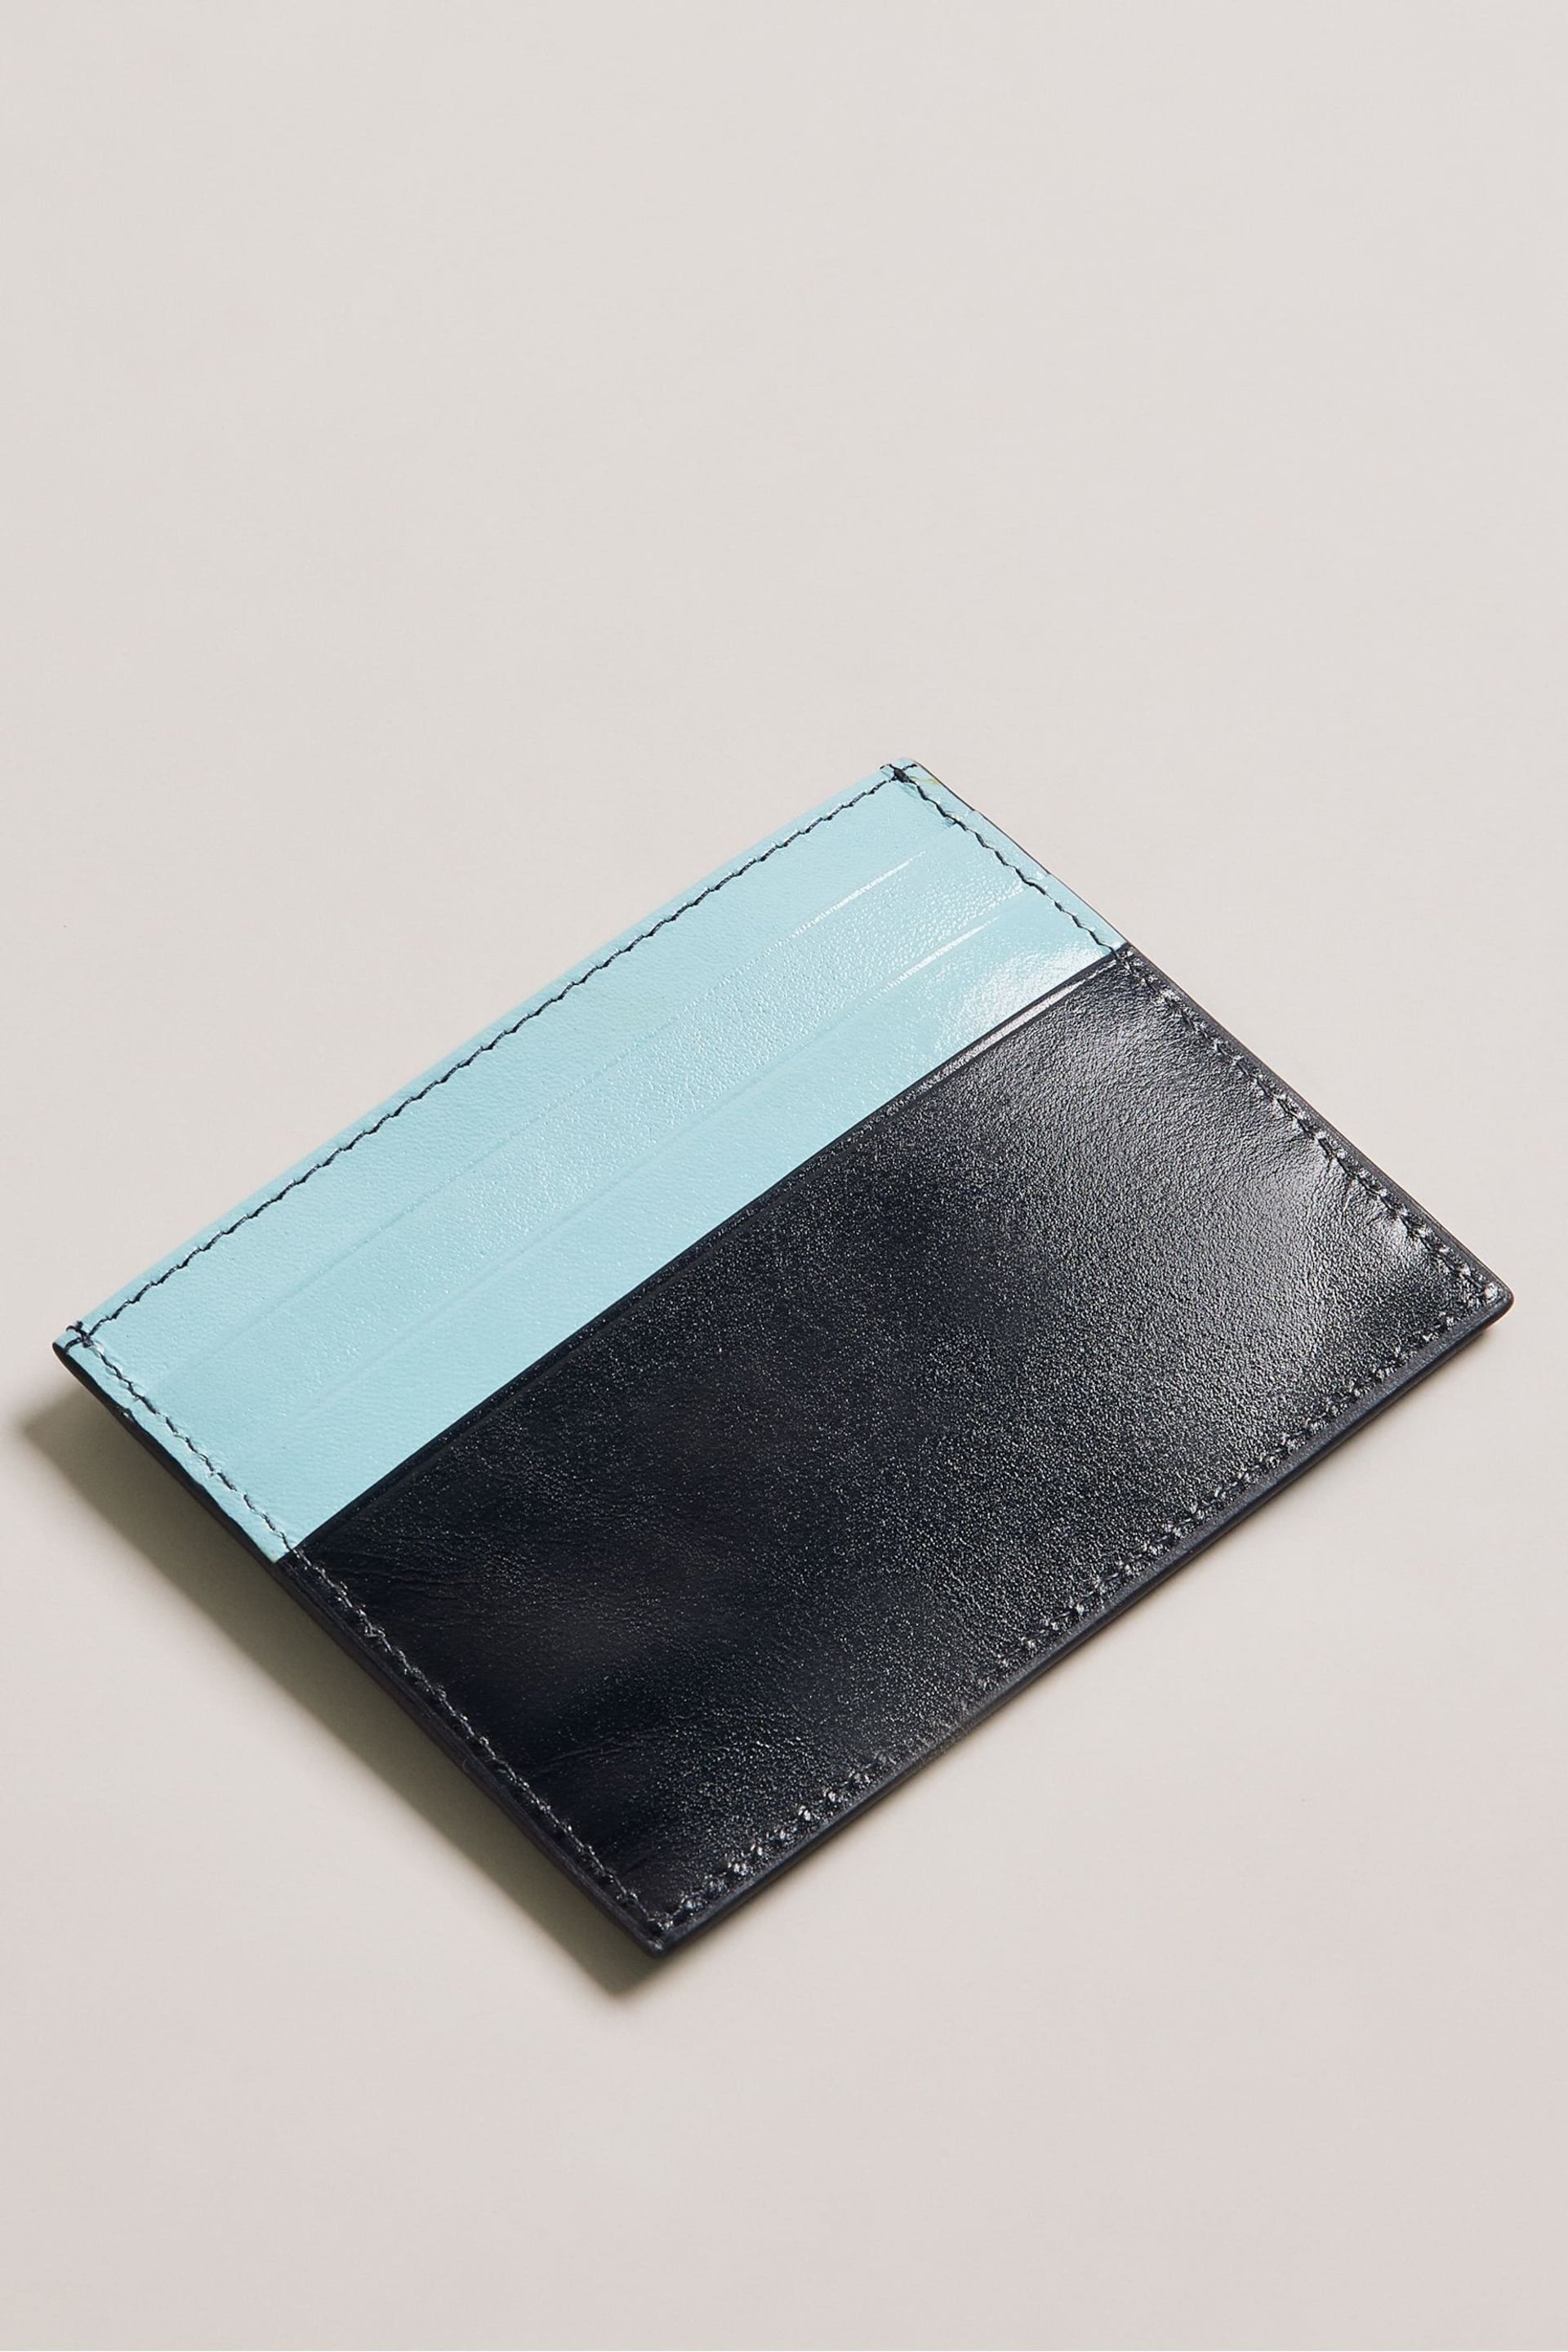 Ted Baker Blue Raffles Embossed Corner Leather Card Holder - Image 2 of 3